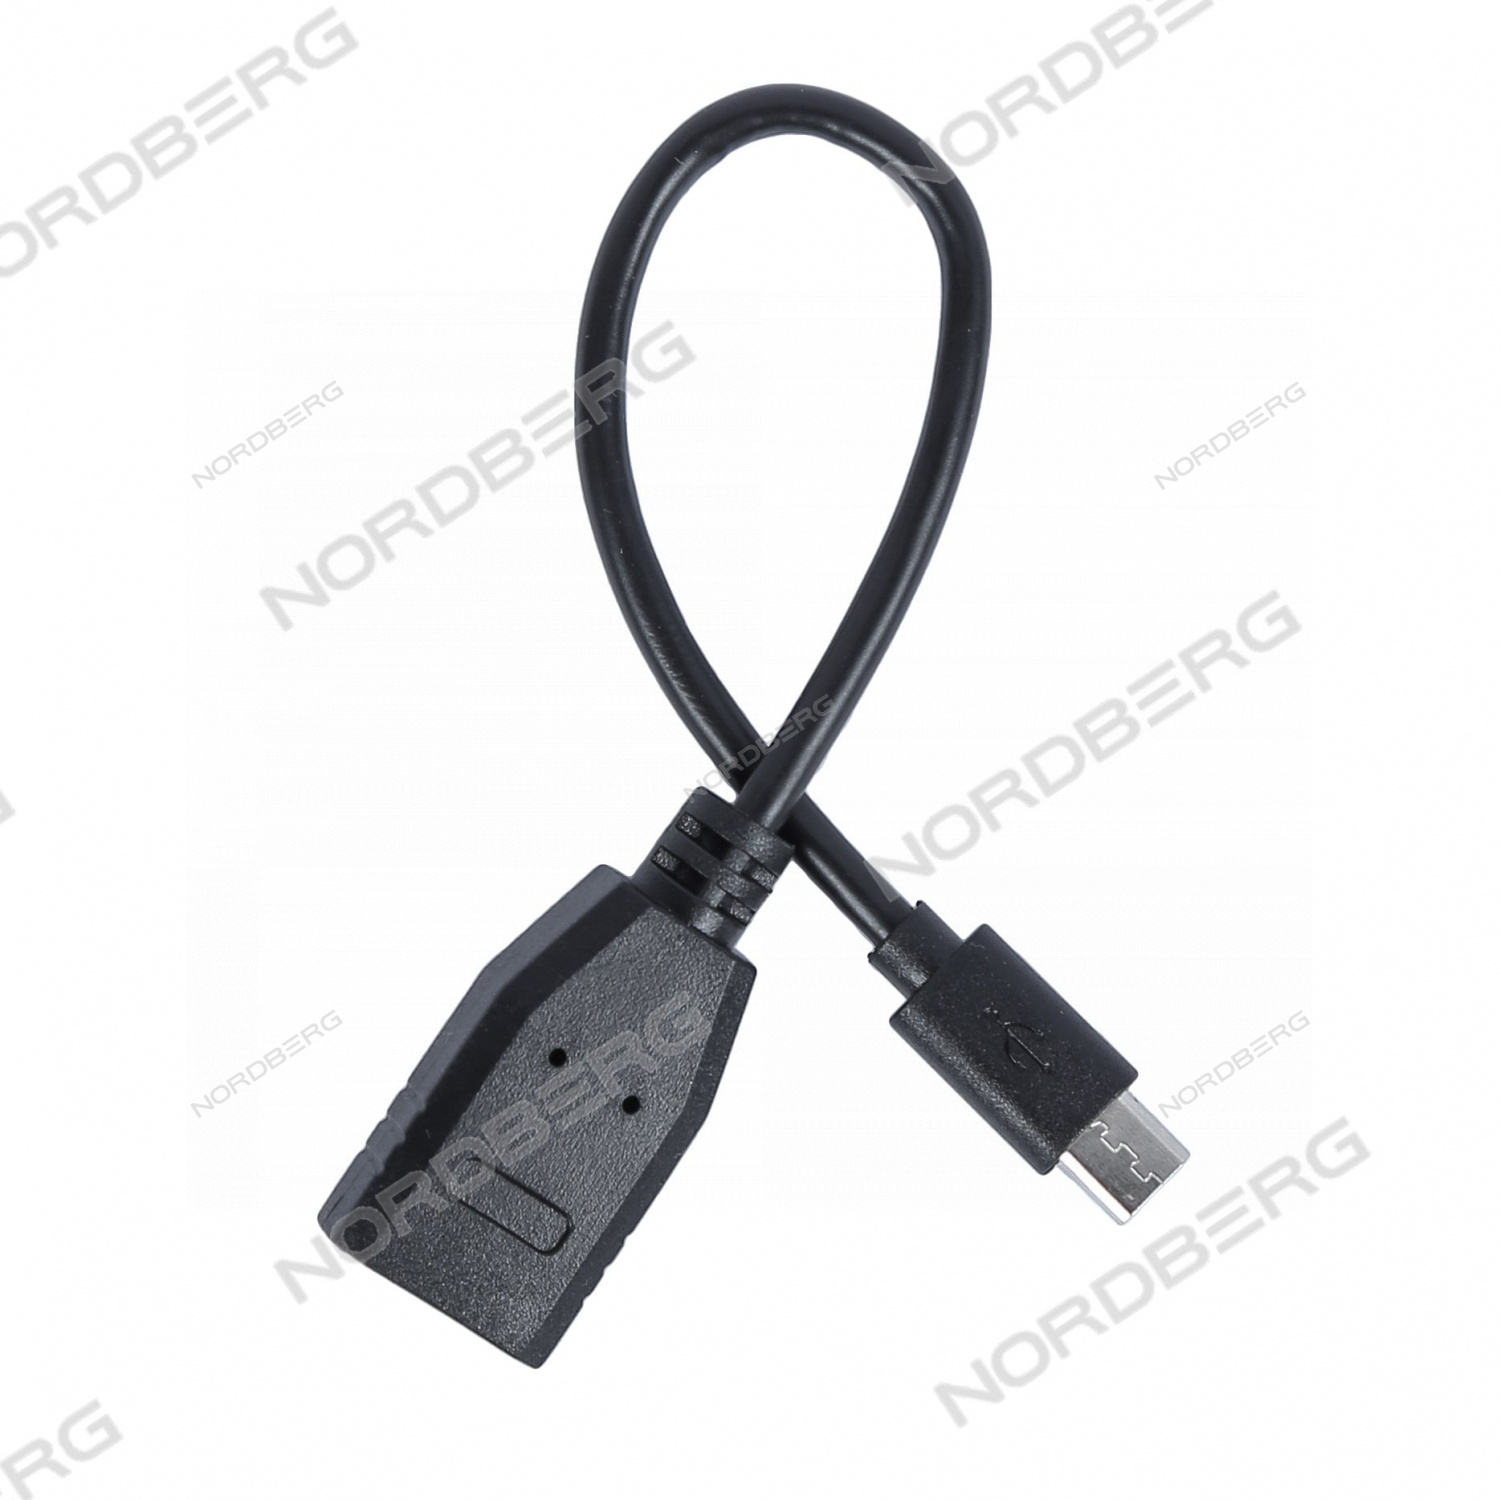 Адаптер Micro USB для VSP-808/VSP-600